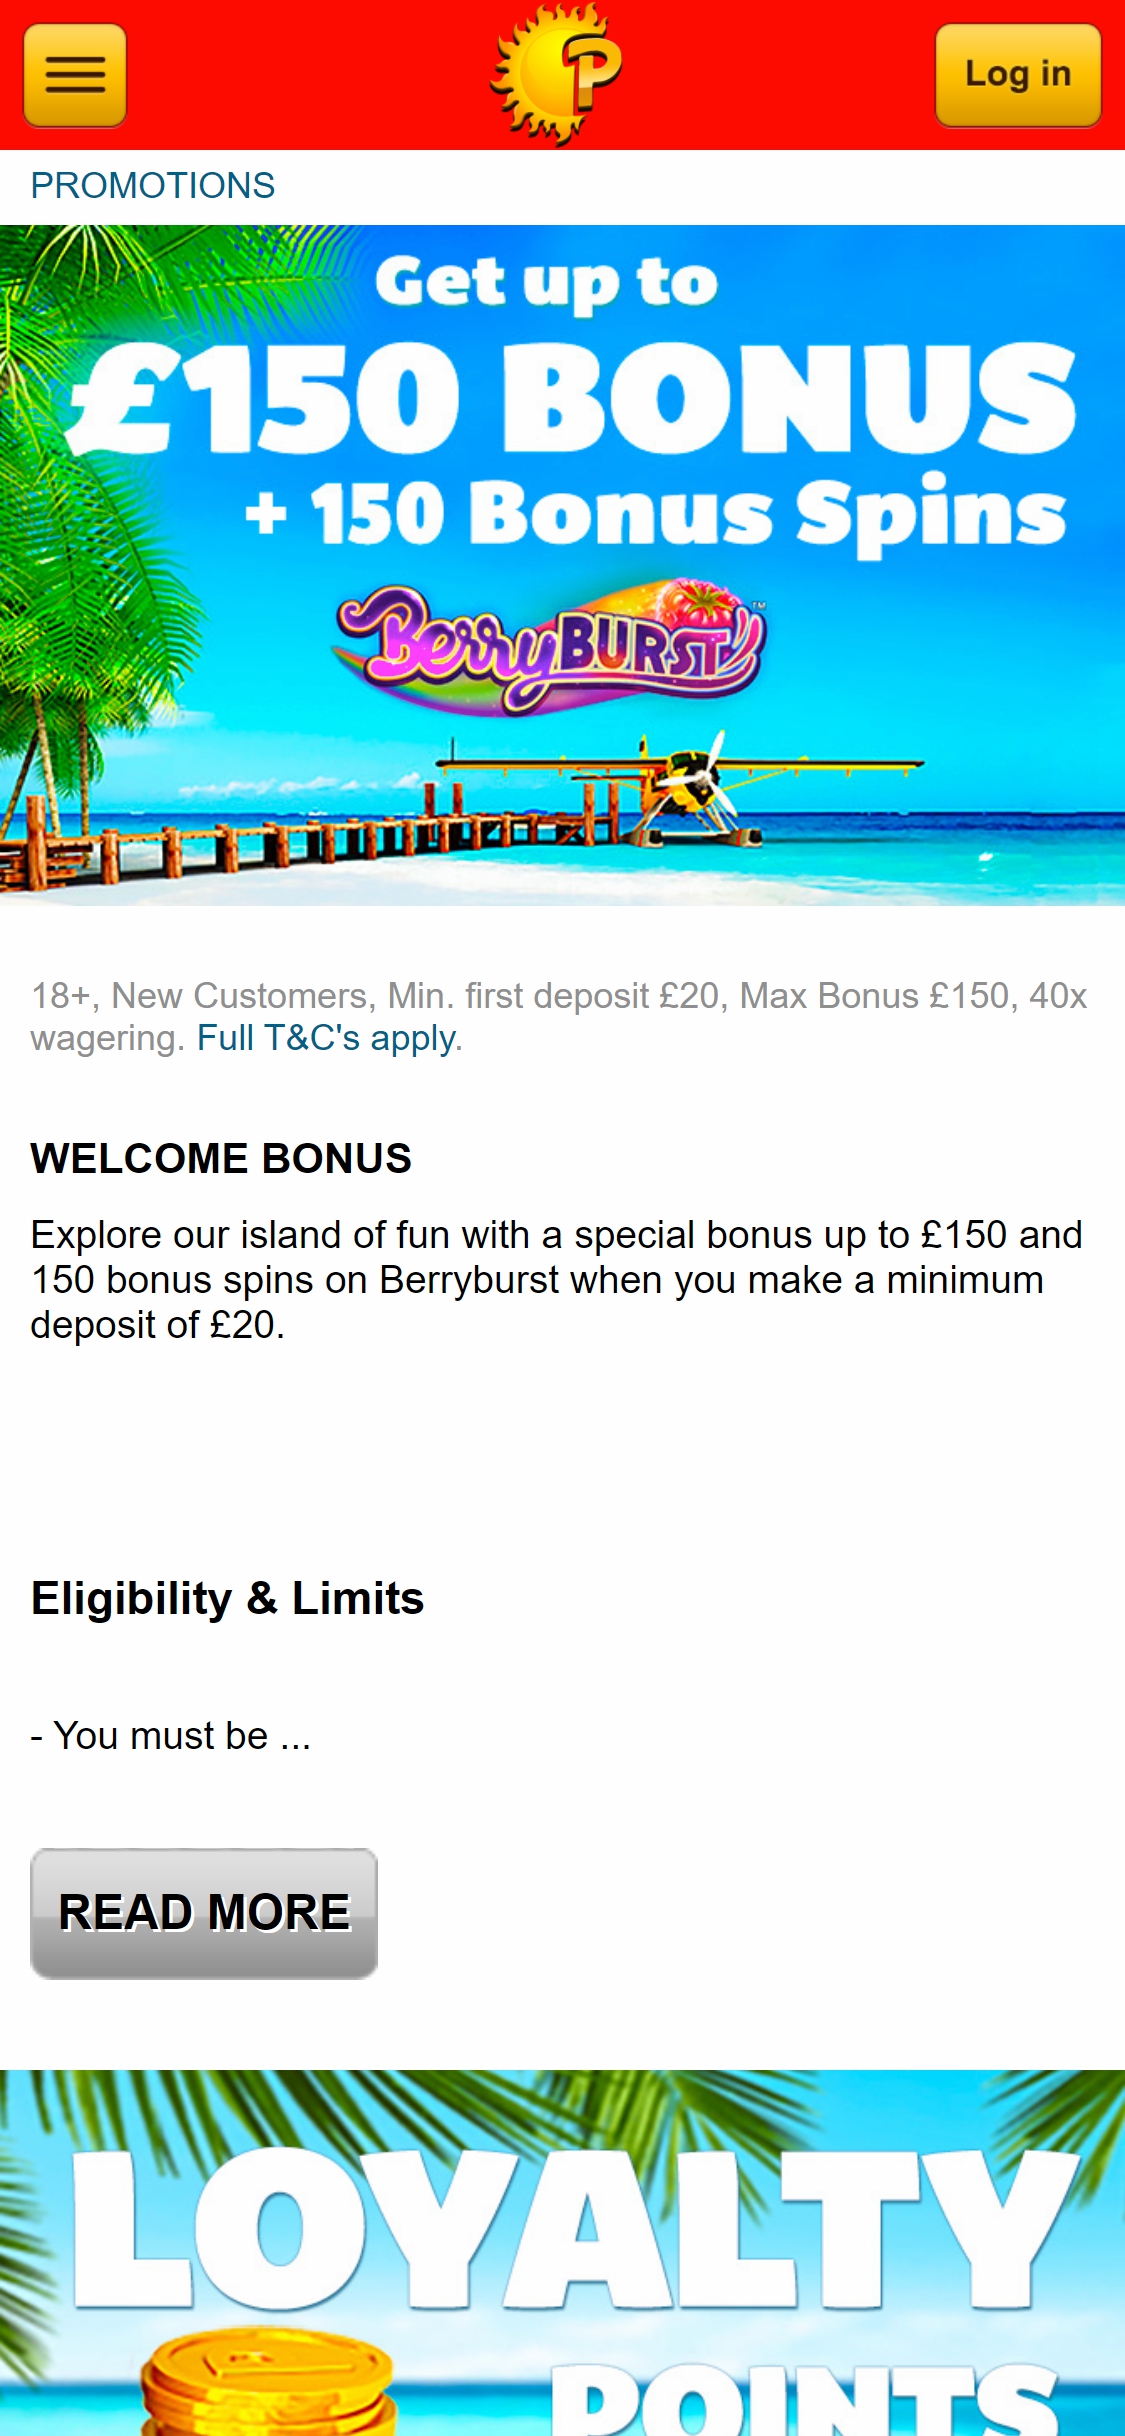 PlaySunny UK Casino Mobile No Deposit Bonus Review